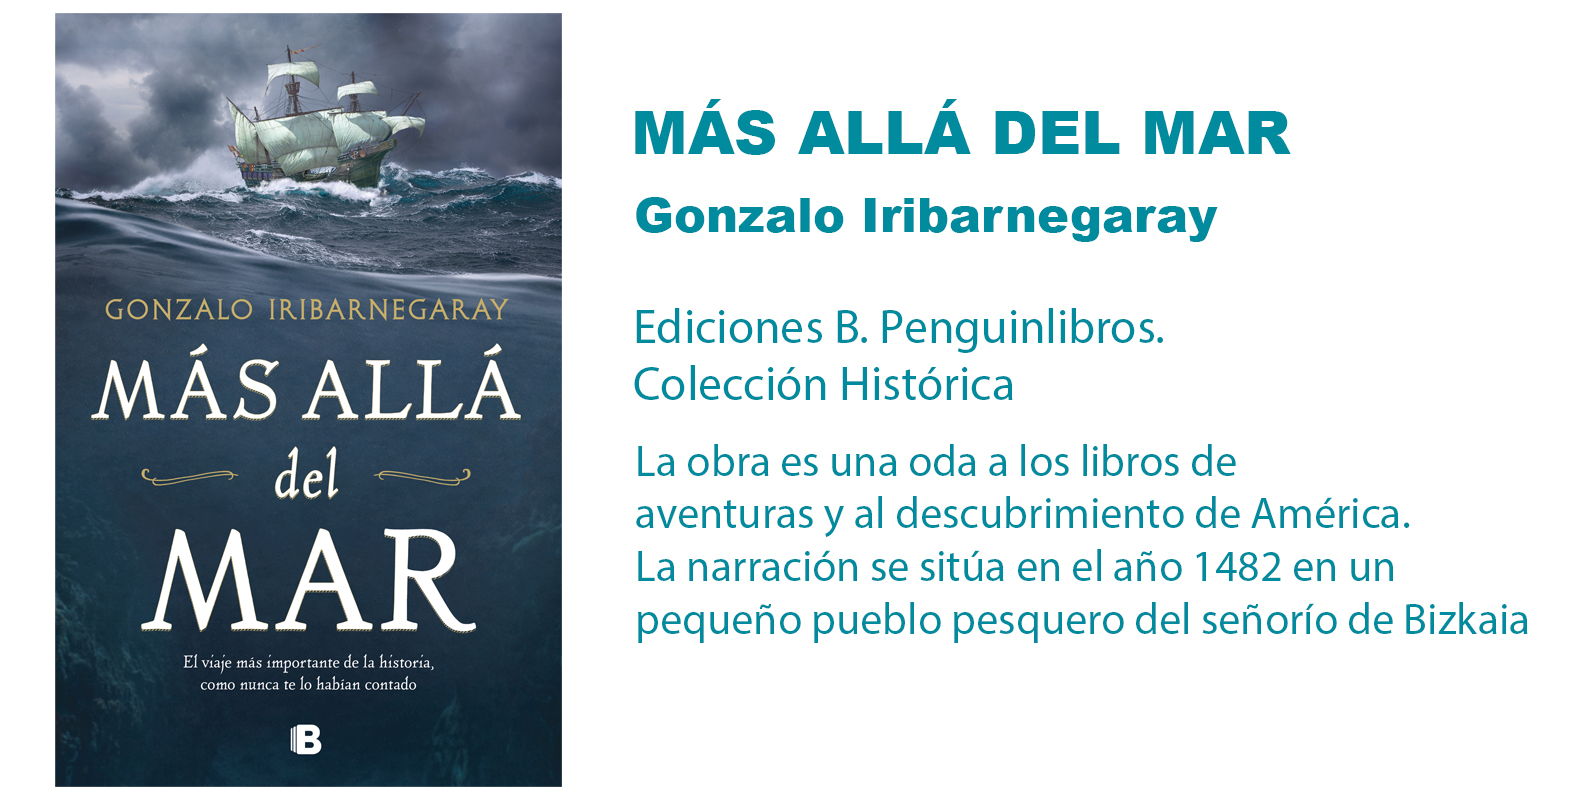 Gonzalo Iribarnergaray escribió “Más allá del mar” antes de morir prematuramente en 2020 a la edad de 48 años